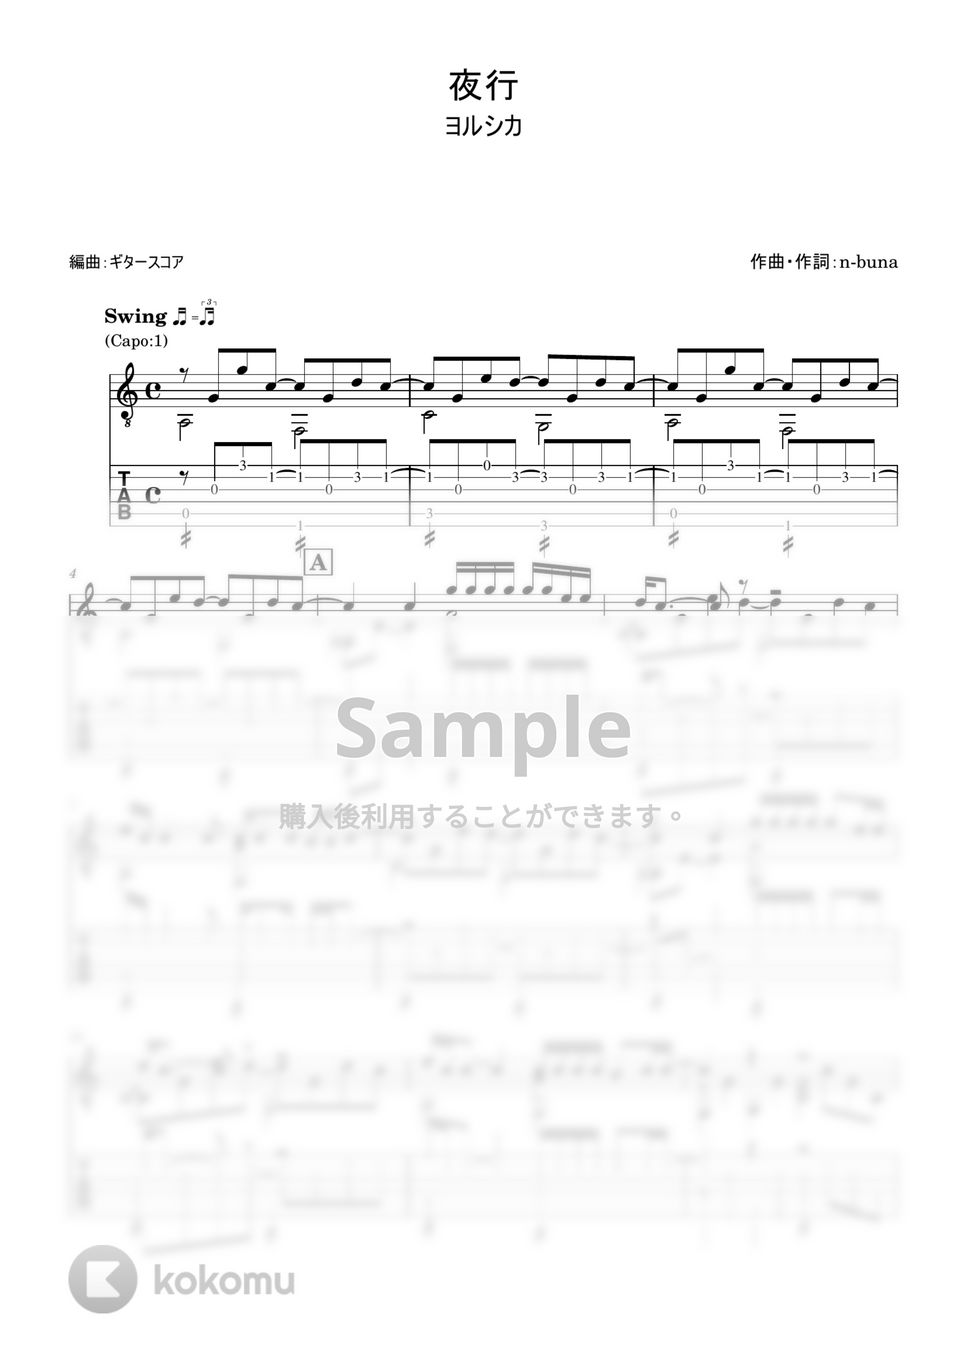 ヨルシカ - 夜行 (ギター・ソロ用) by ギタースコア